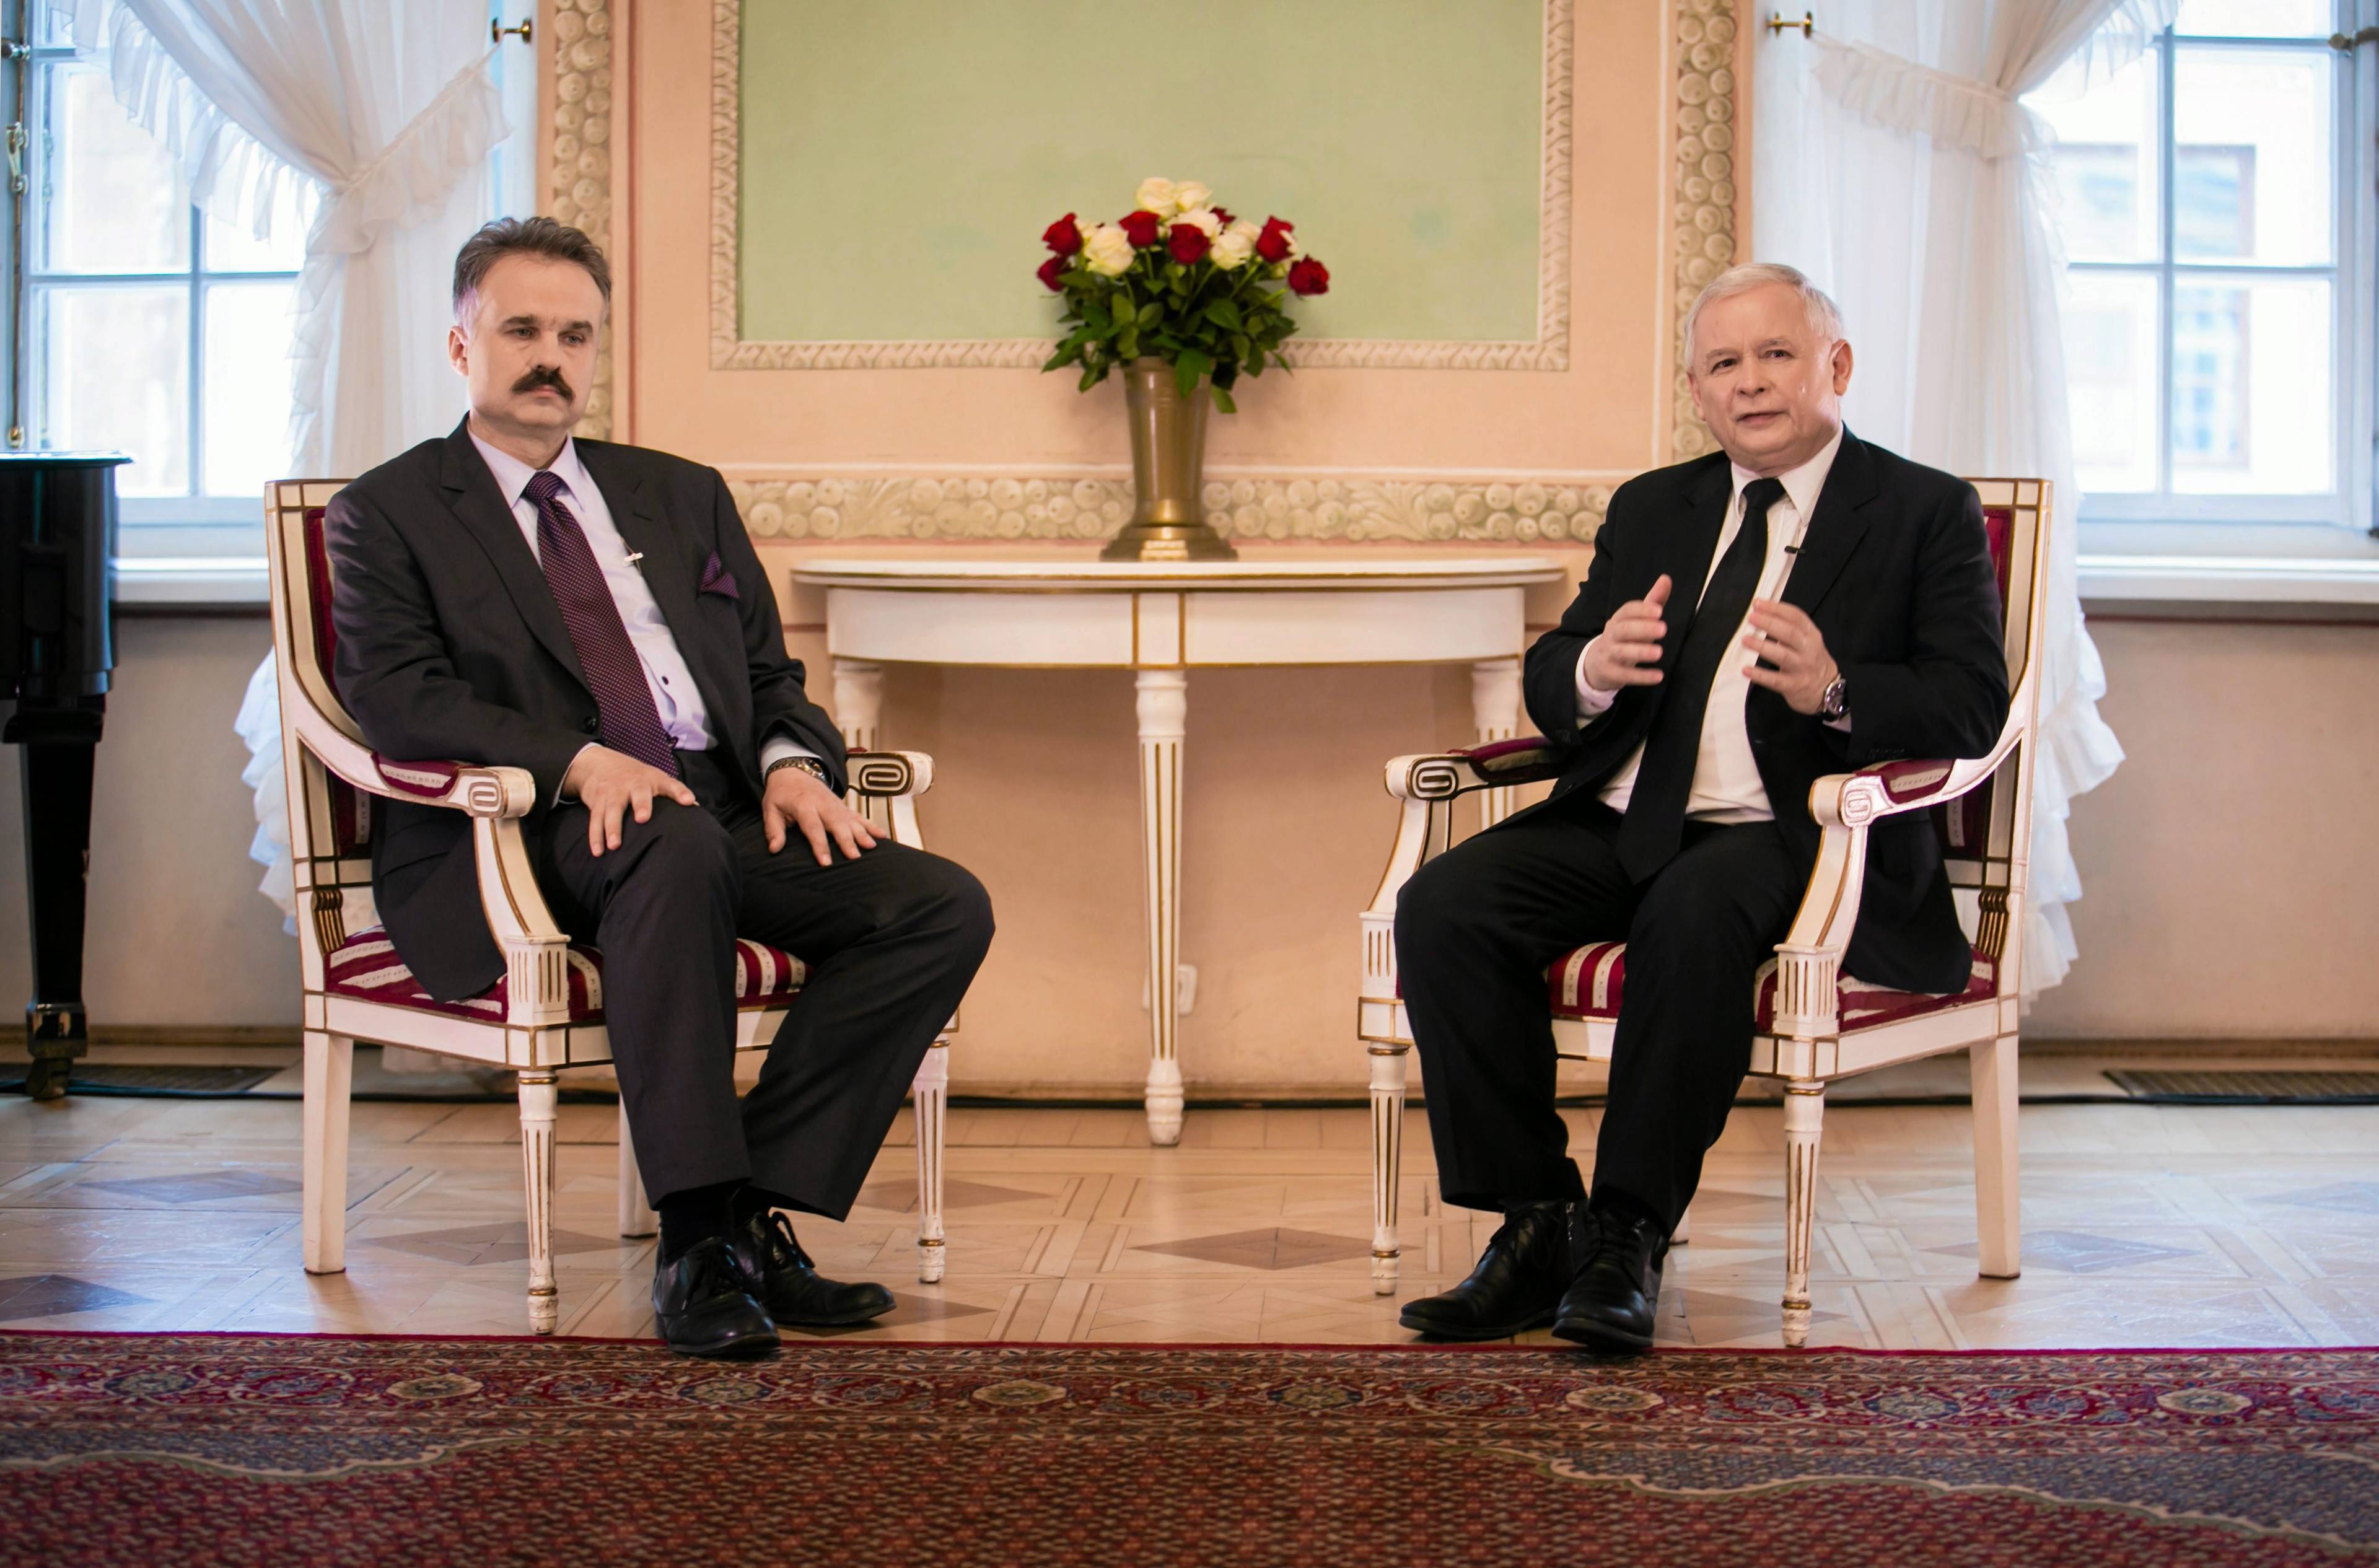 Dwaj mężczyźni: Waldemar Paruch ( z lewej) i Jarosław Kaczyński siedzą w zabytkowej sali przy stole. MaBeNa